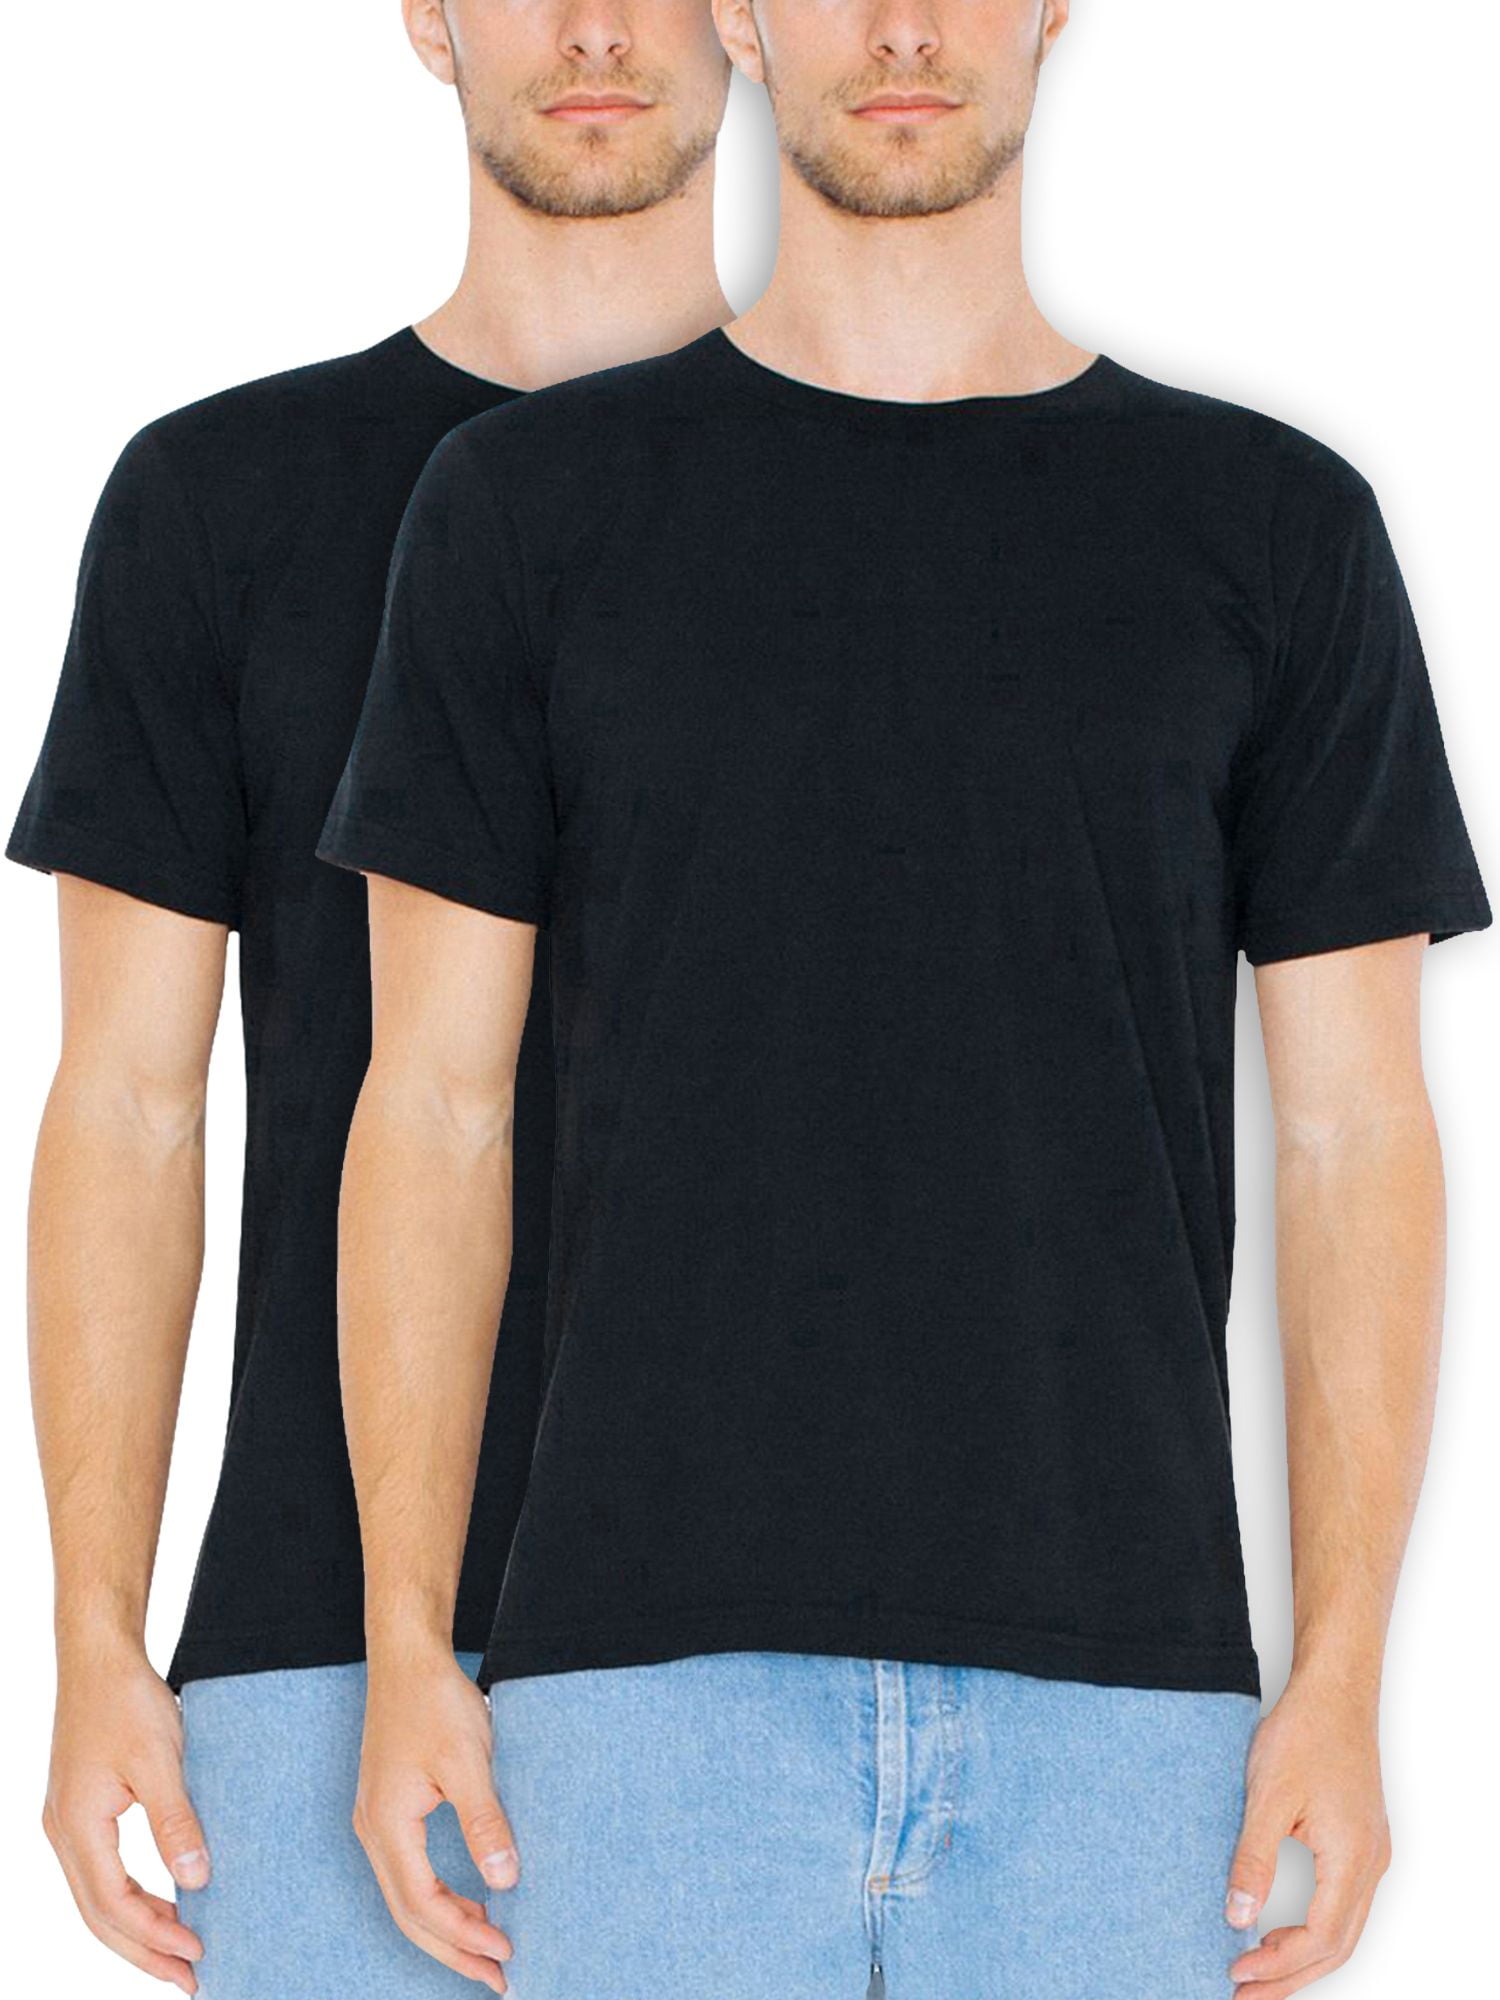 American Apparel Men's & Big Men's Fine Jersey Crewneck T-Shirts, 2-Pack, XS-3XL - Walmart.com